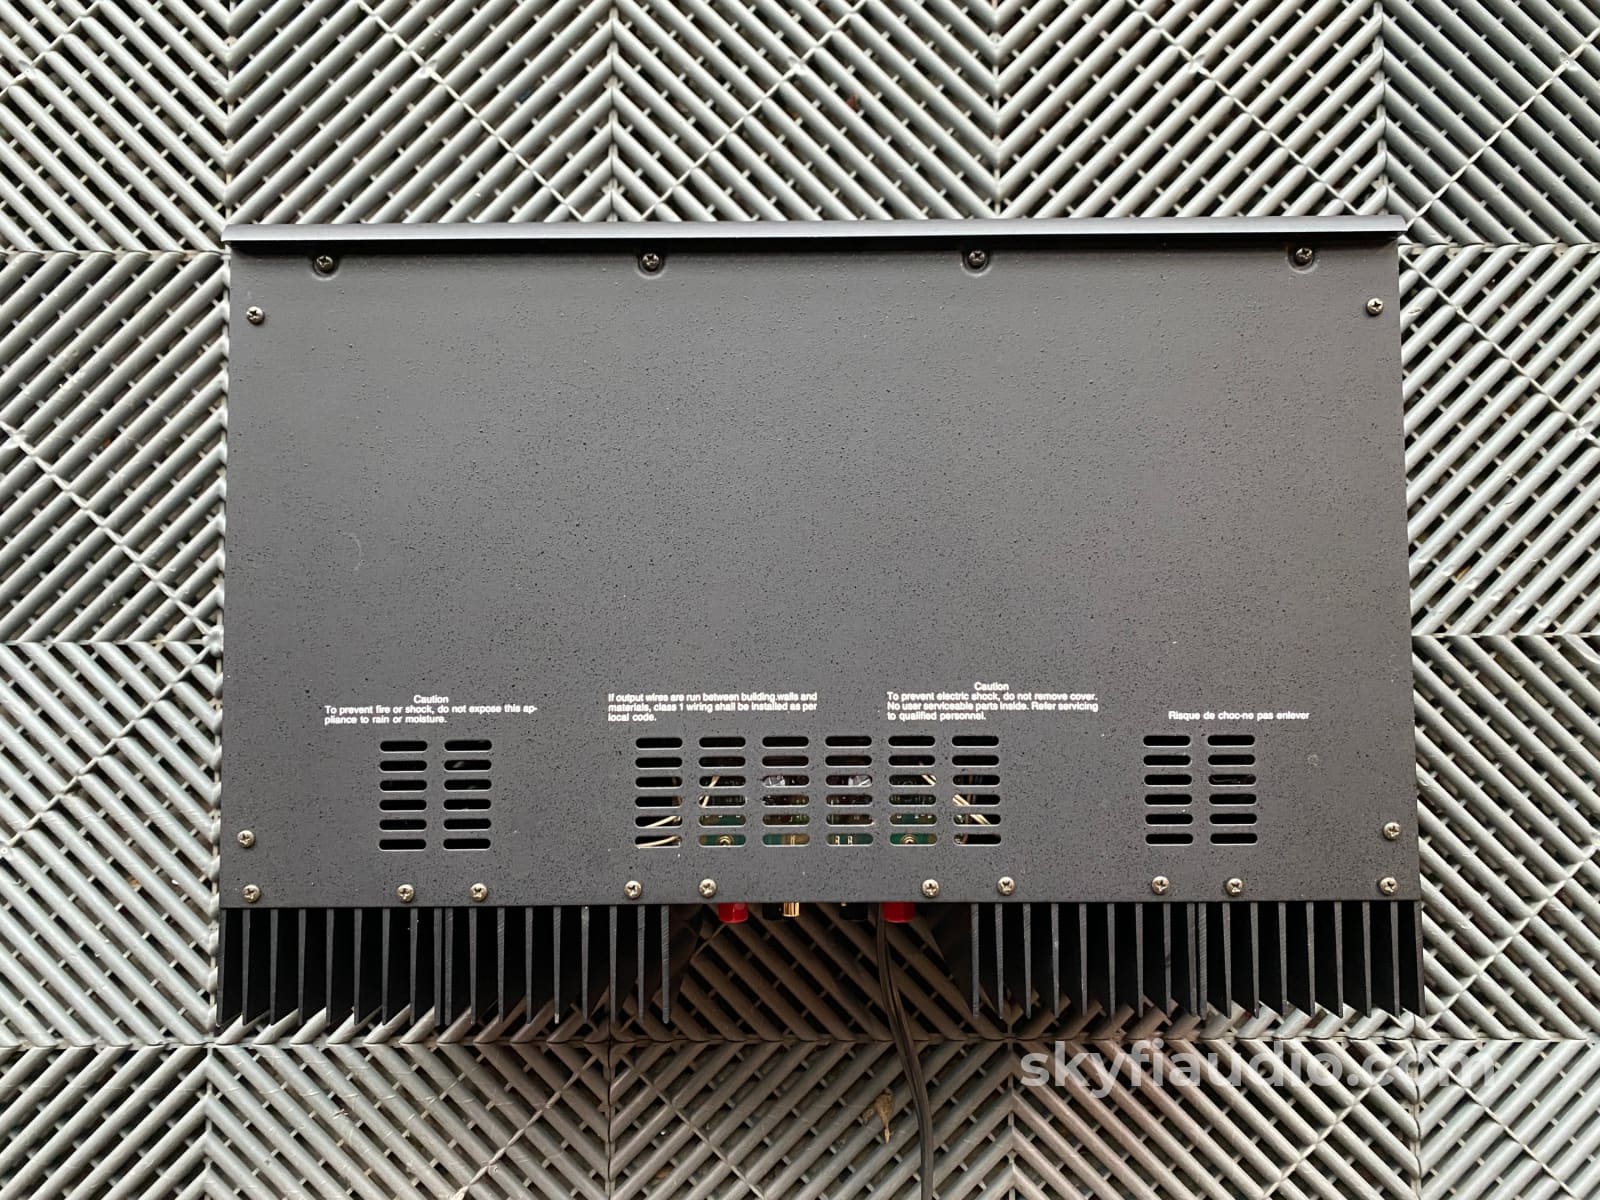 Adcom Gfa-555 Mki Stereo Amplifier - 200W X 2 Serviced